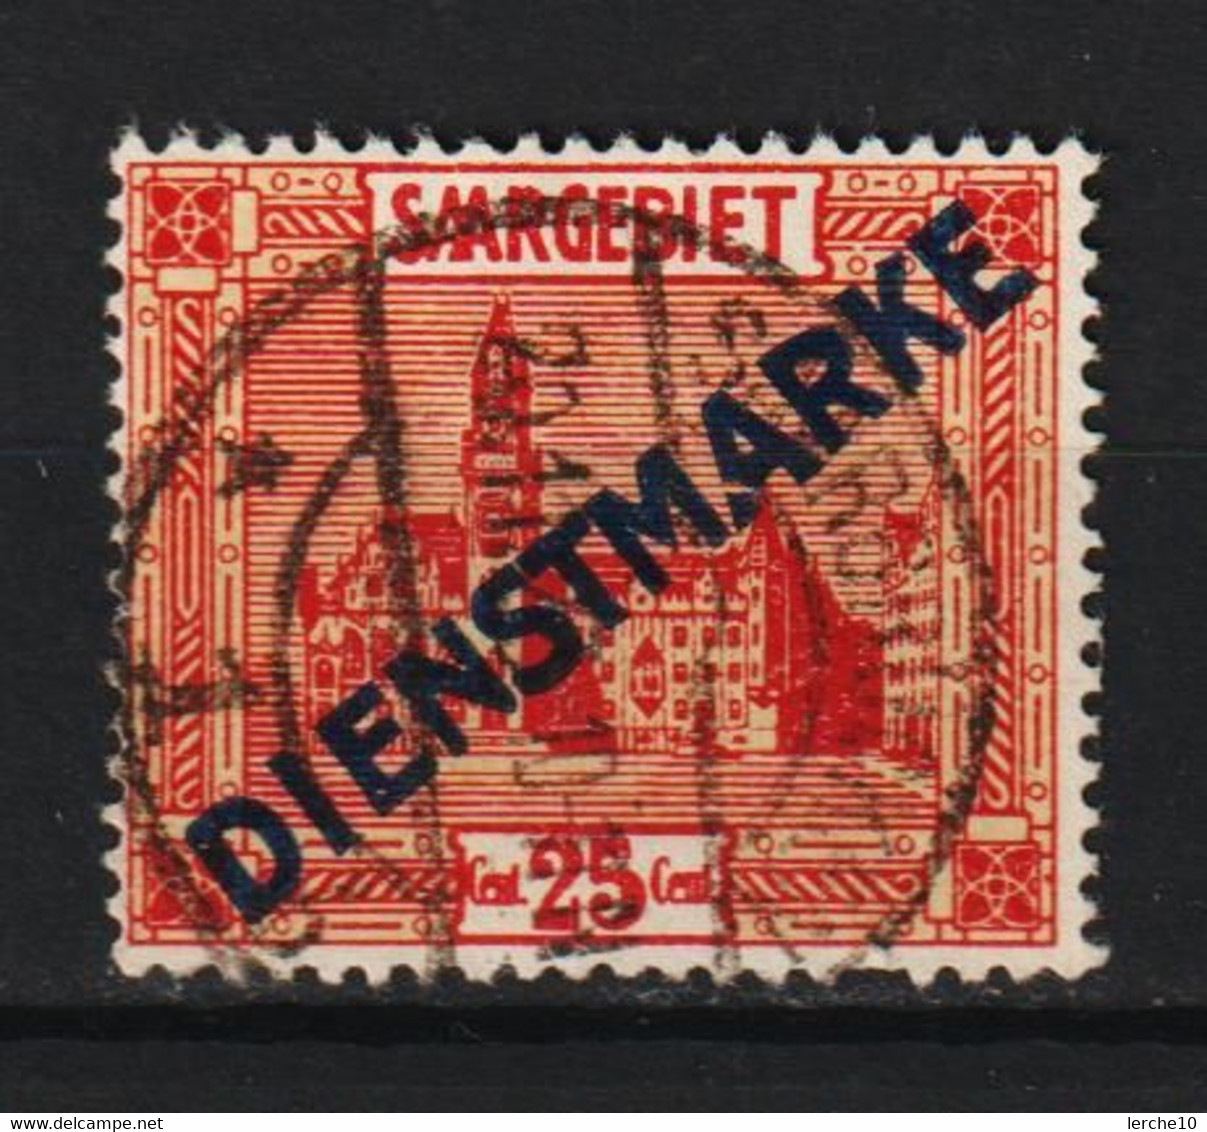 Saar MiNr. D 6 III (sab58) - Dienstmarken